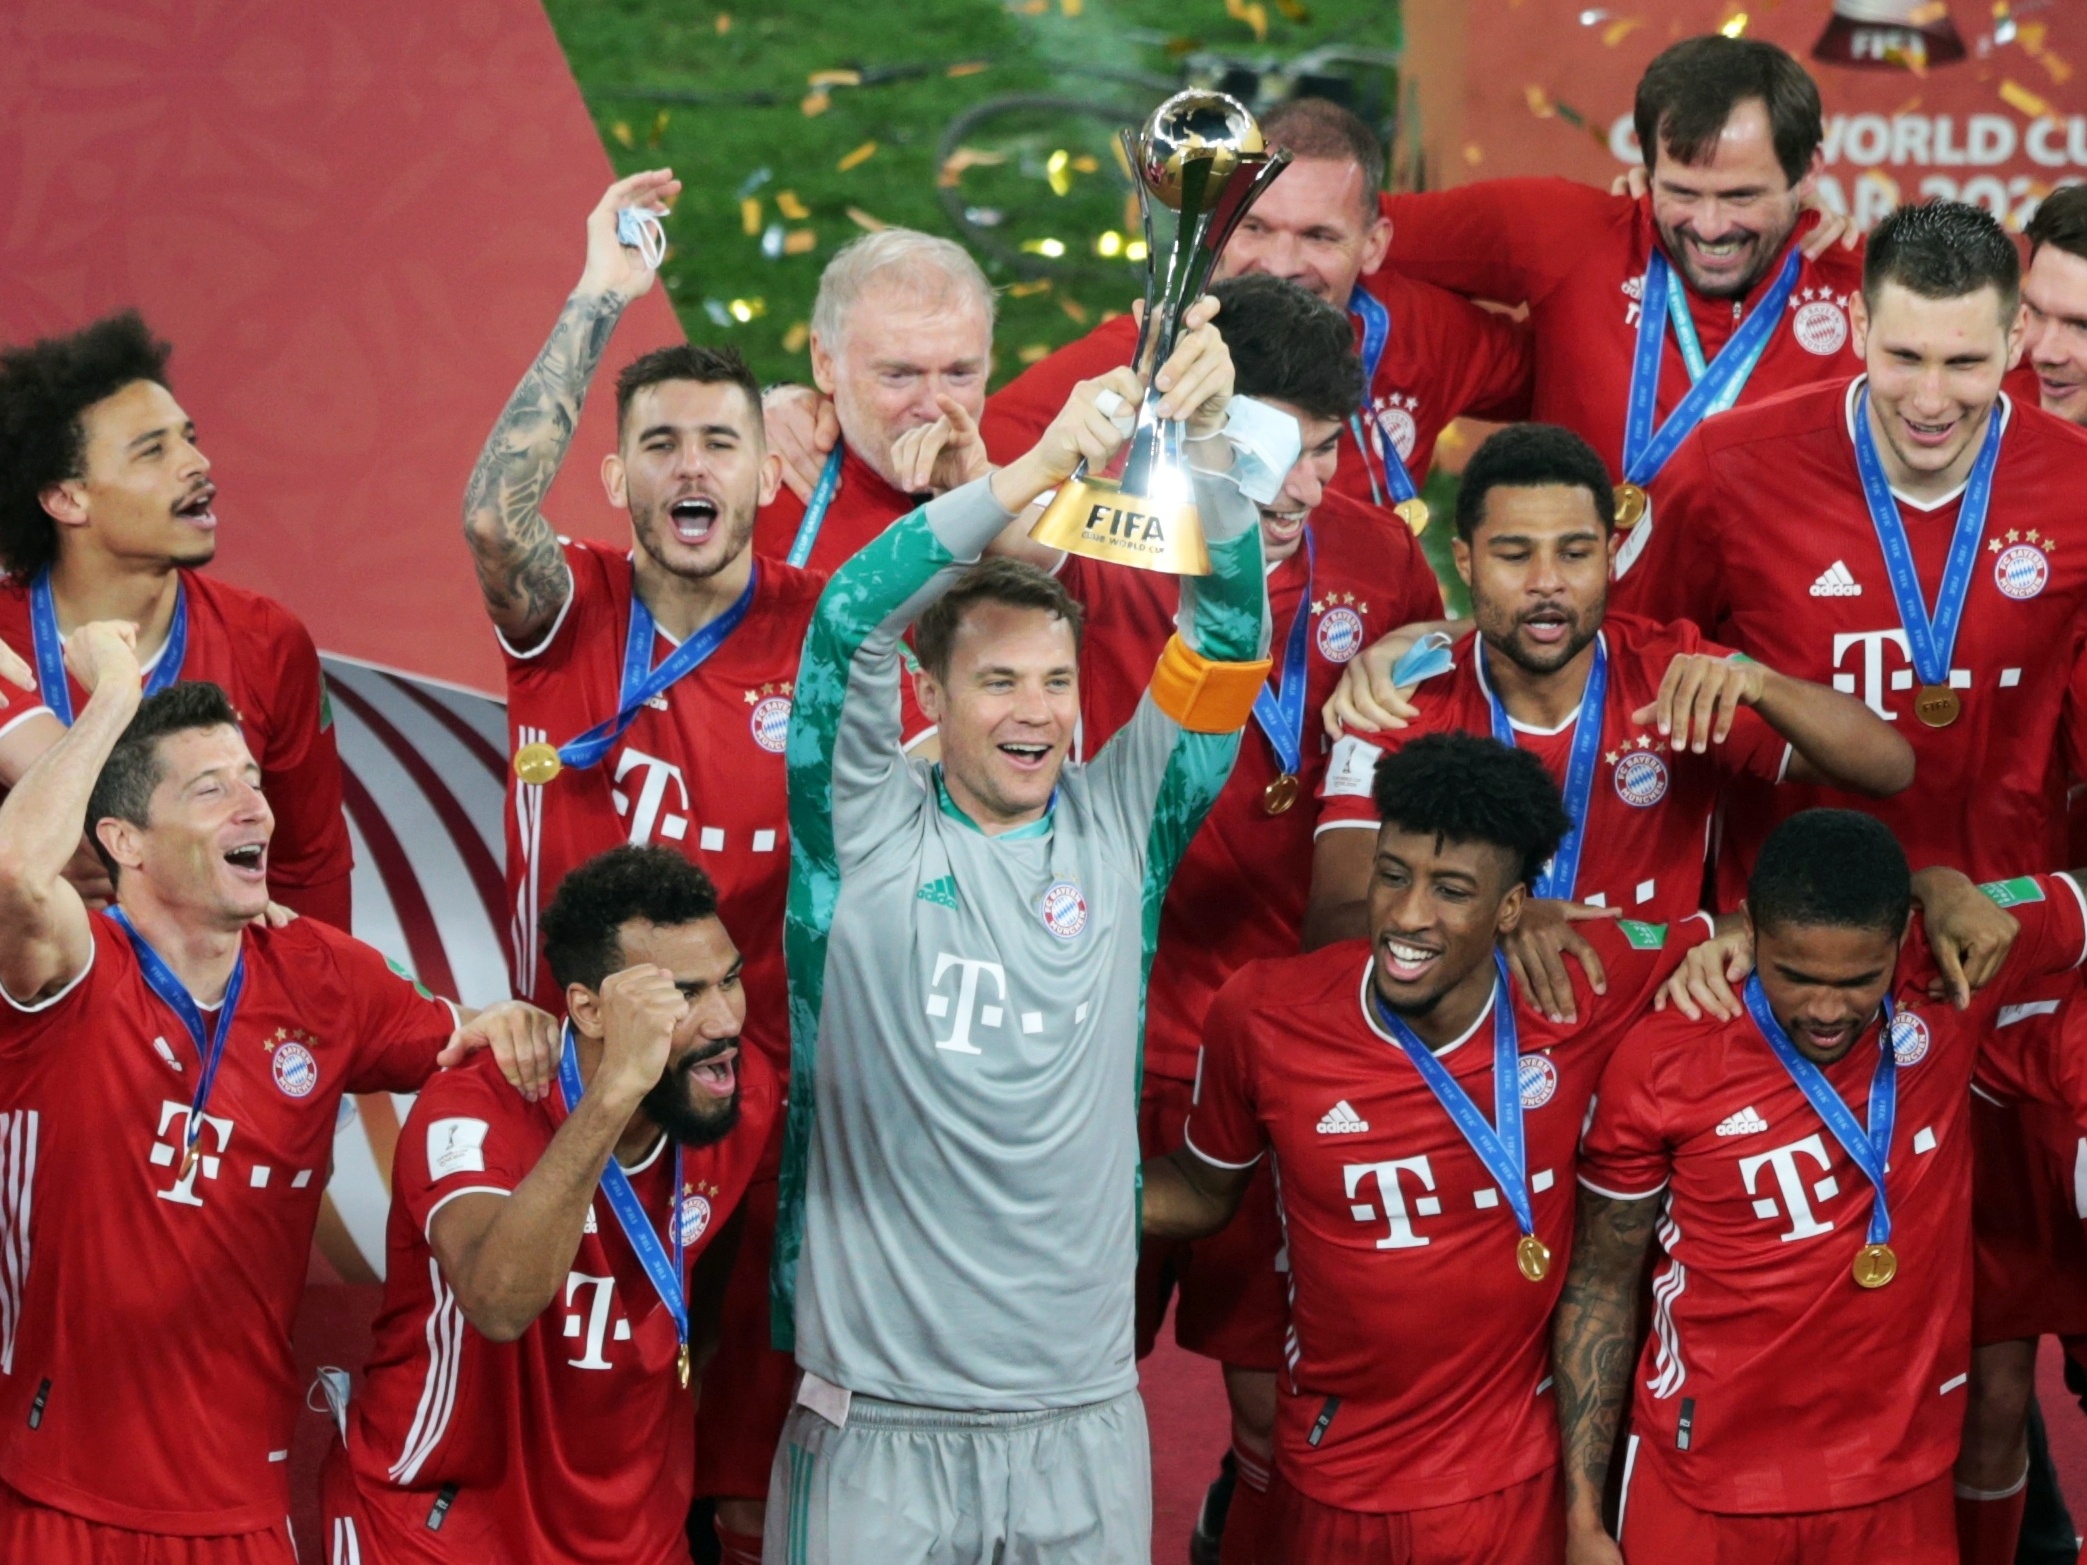 Bayern de Munique é o clube com mais jogadores na Copa do Mundo de